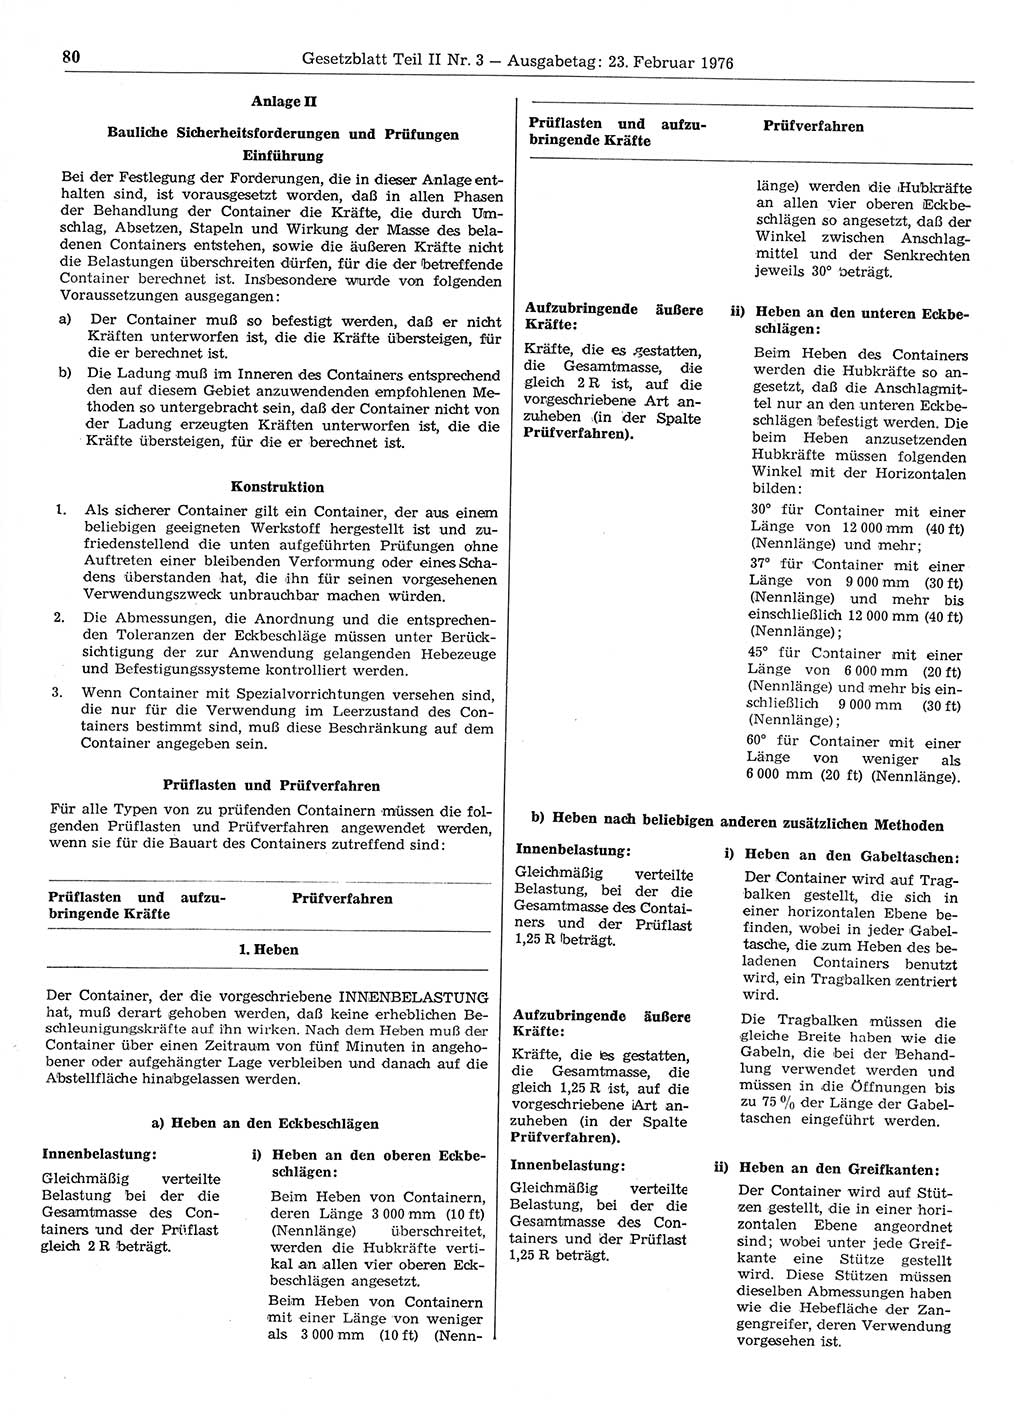 Gesetzblatt (GBl.) der Deutschen Demokratischen Republik (DDR) Teil ⅠⅠ 1976, Seite 80 (GBl. DDR ⅠⅠ 1976, S. 80)